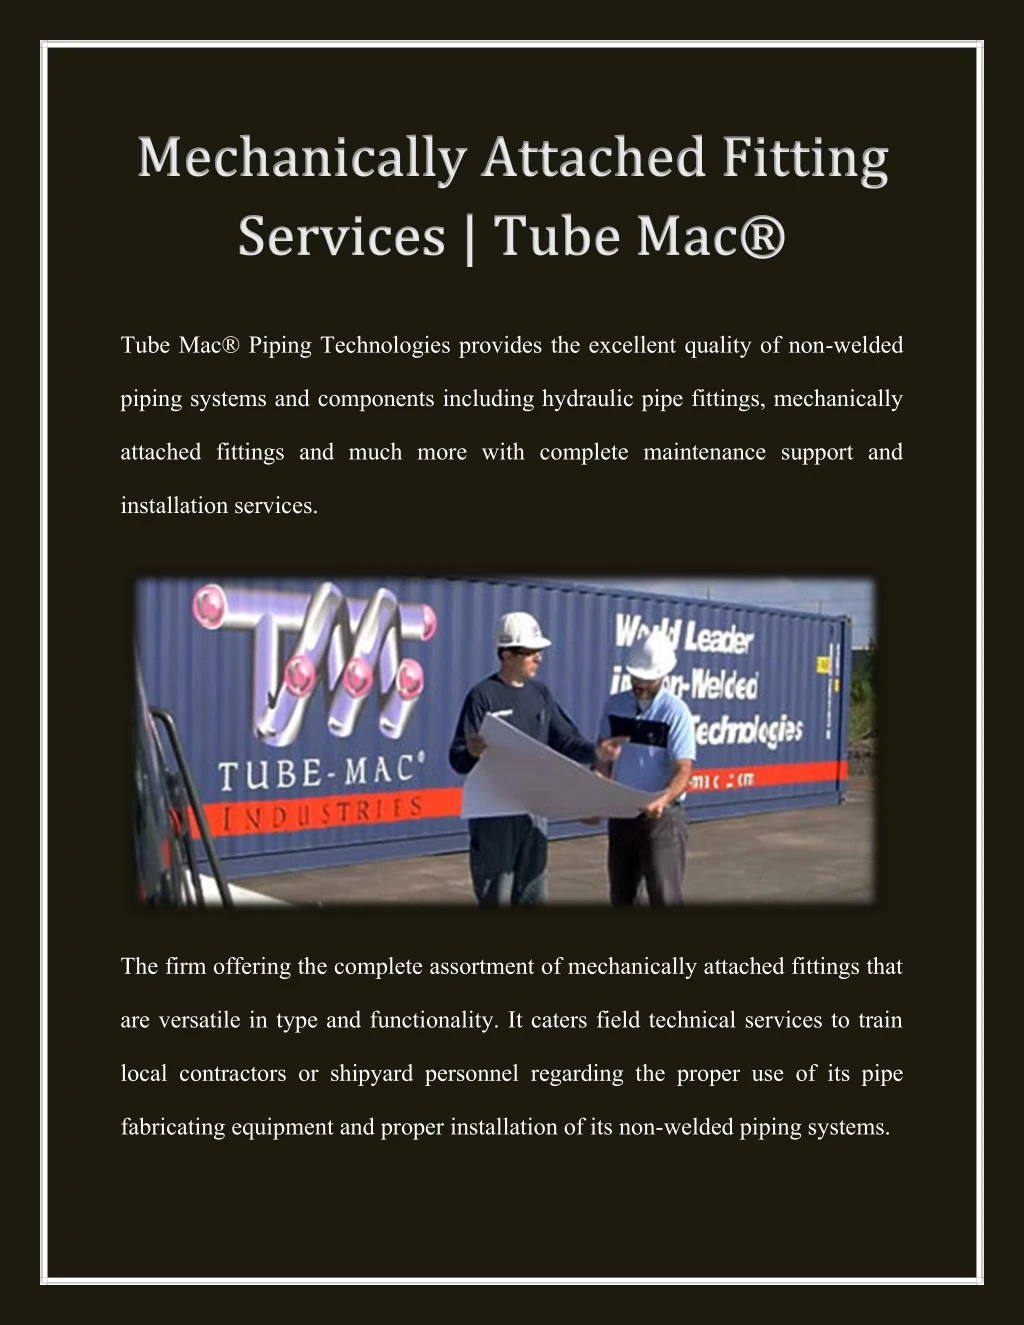 tube mac piping technologies provides